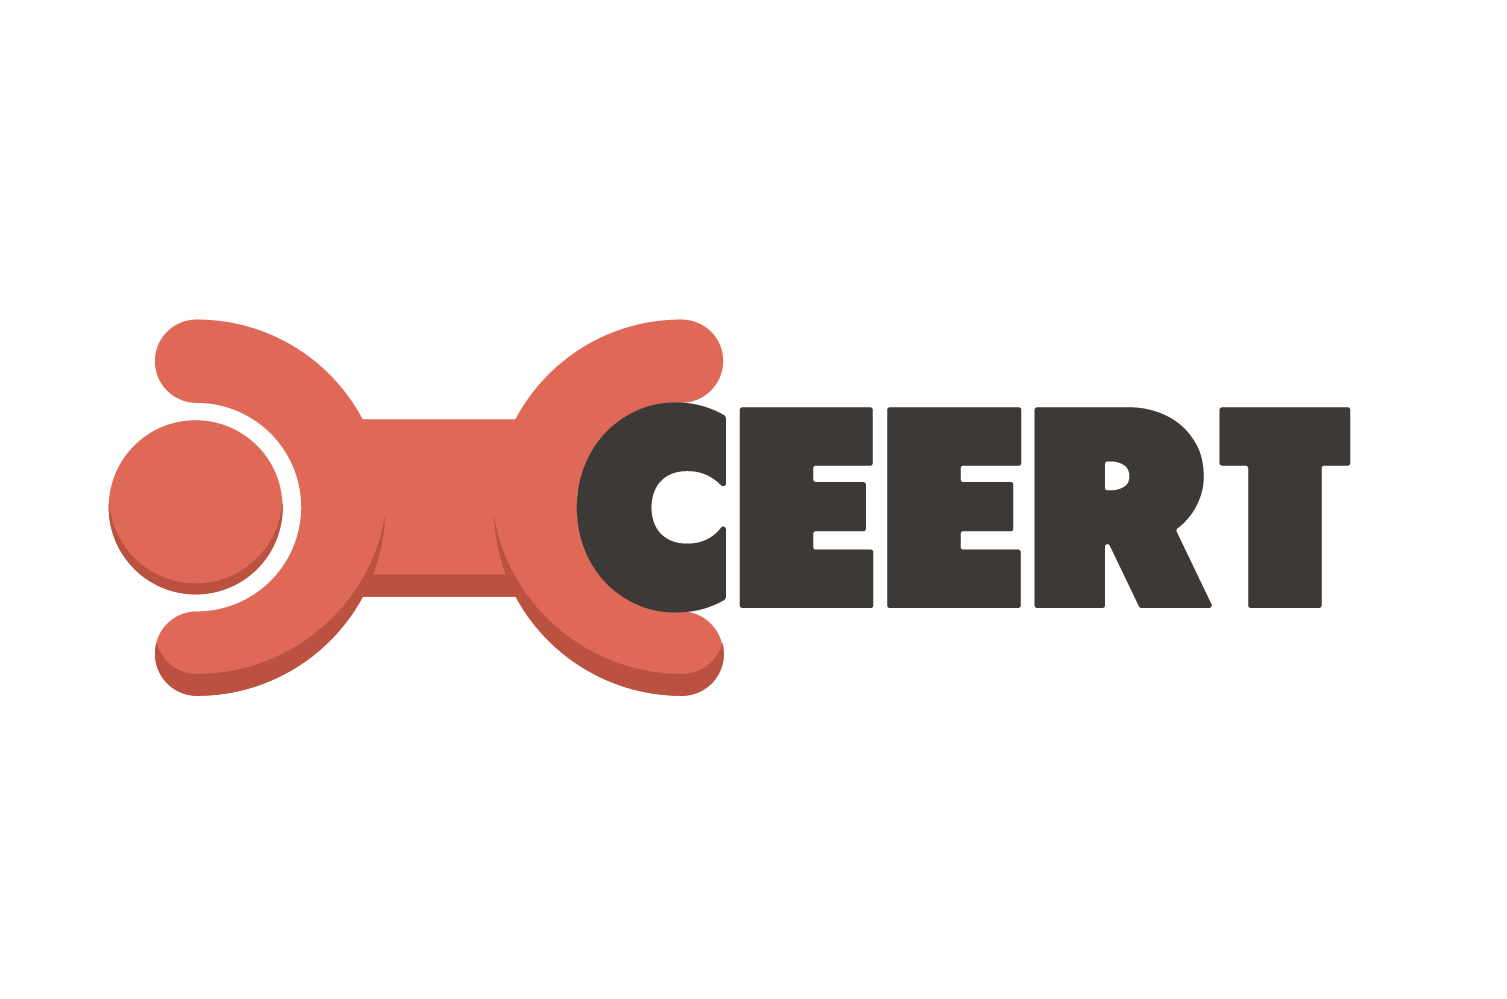 Logo Ceert